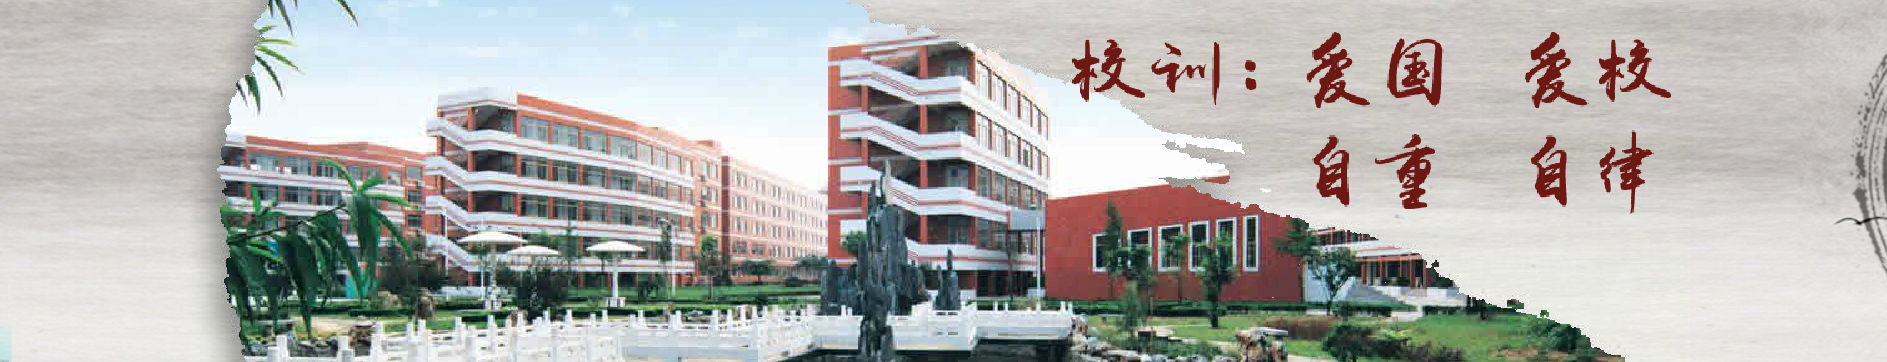 江蘇省東海高級中學